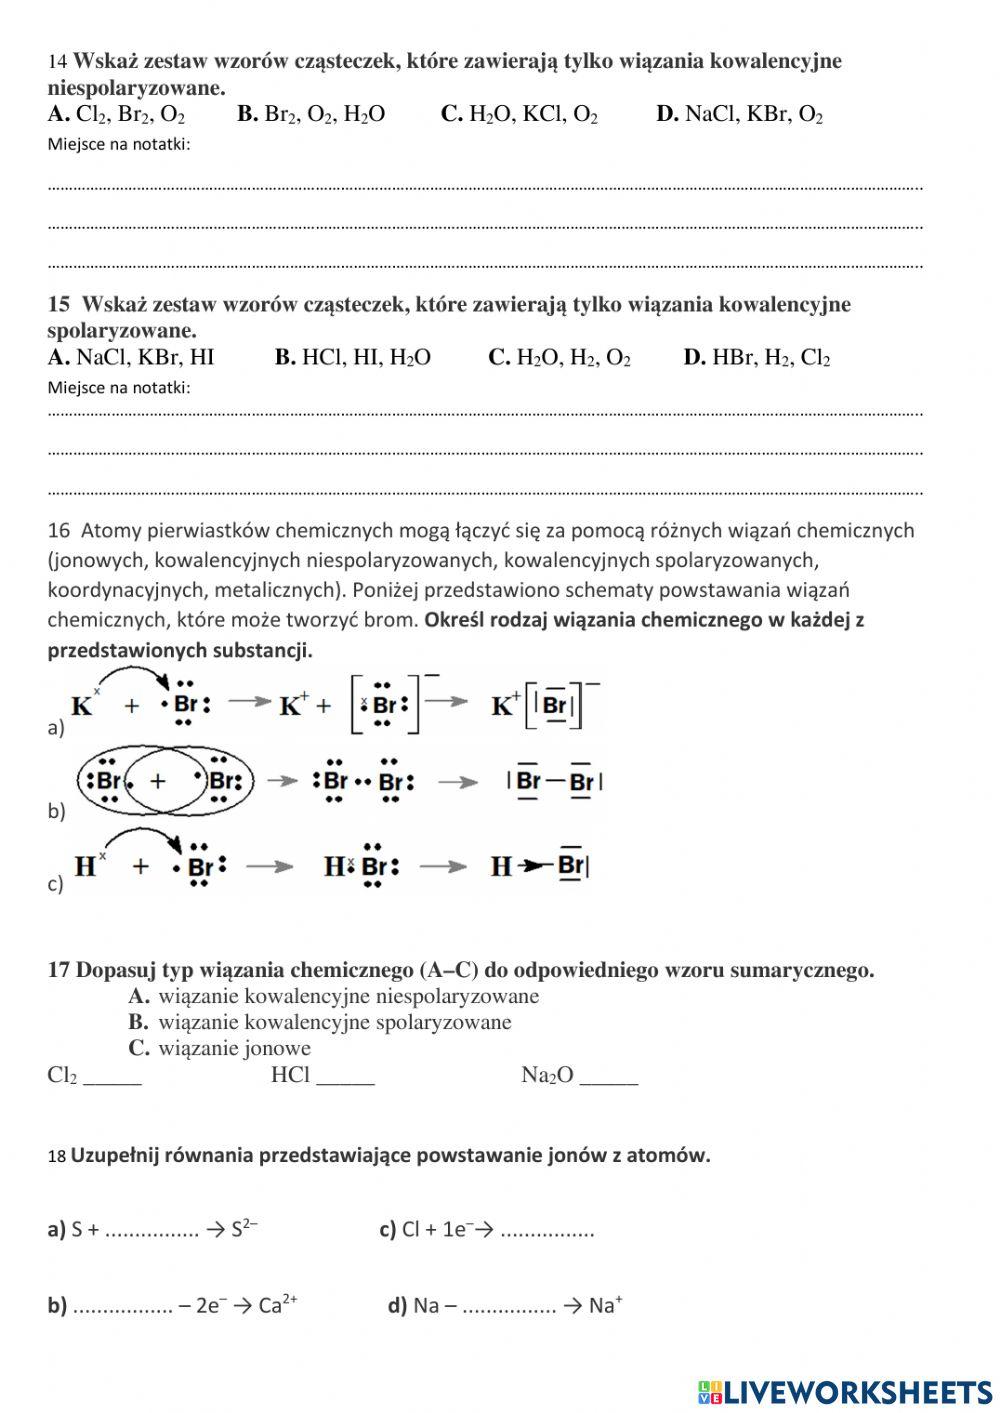 Chemia-wiązanie i konfiguracja